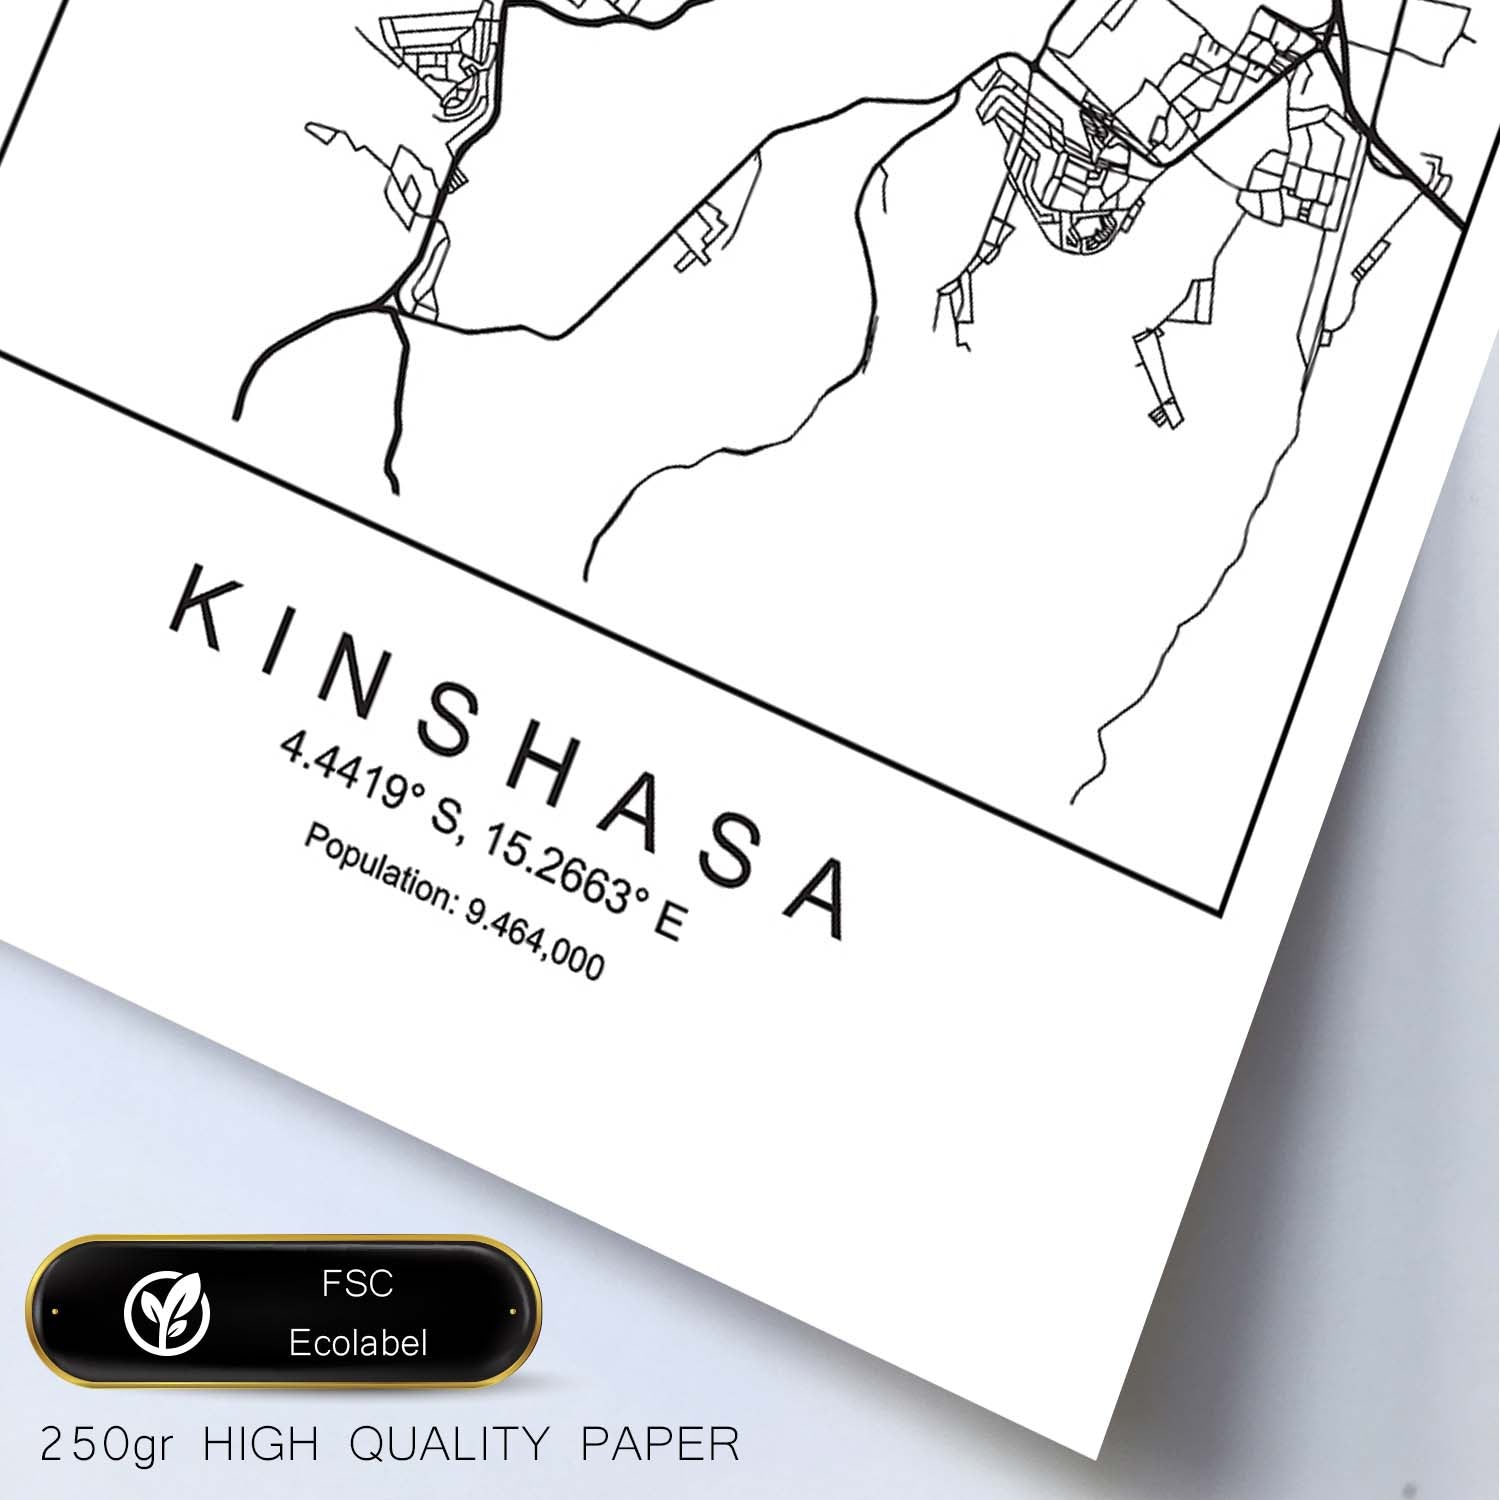 Lámina mapa de la ciudad Kinshasa estilo nordico en blanco y negro.-Artwork-Nacnic-Nacnic Estudio SL